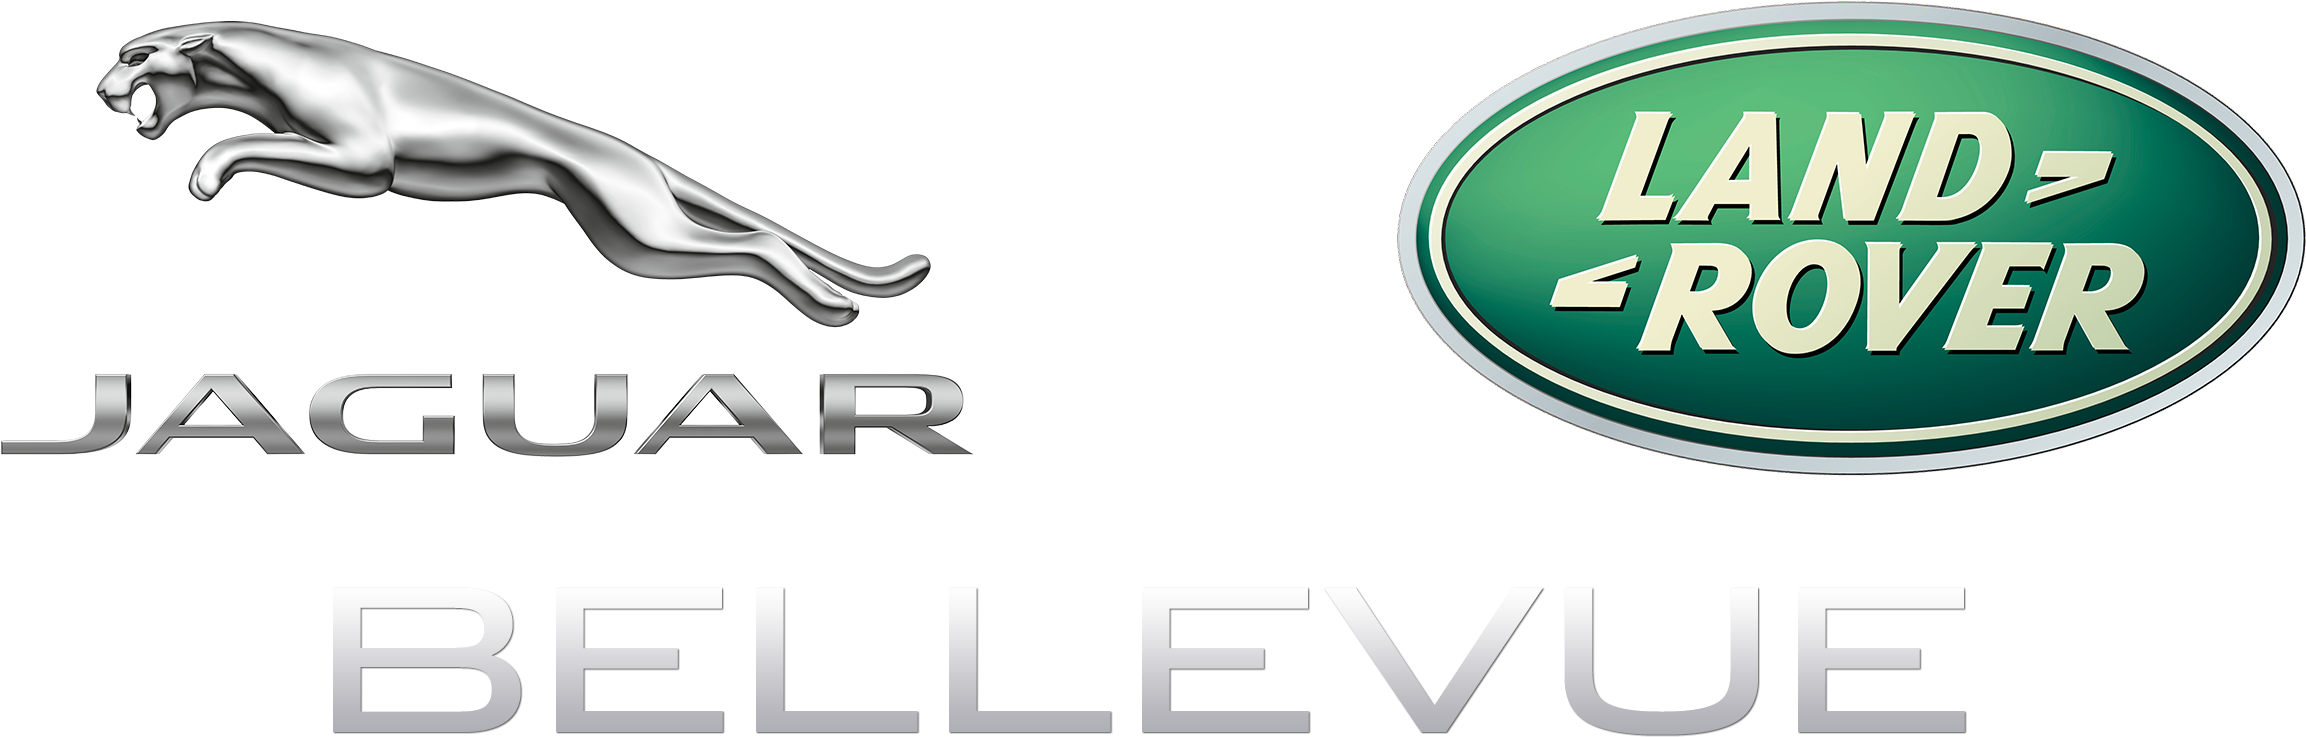 Jaguar Land Rover Logo Png - Chery Jaguar Land Rover Automotive Co Ltd (3280x1080), Png Download